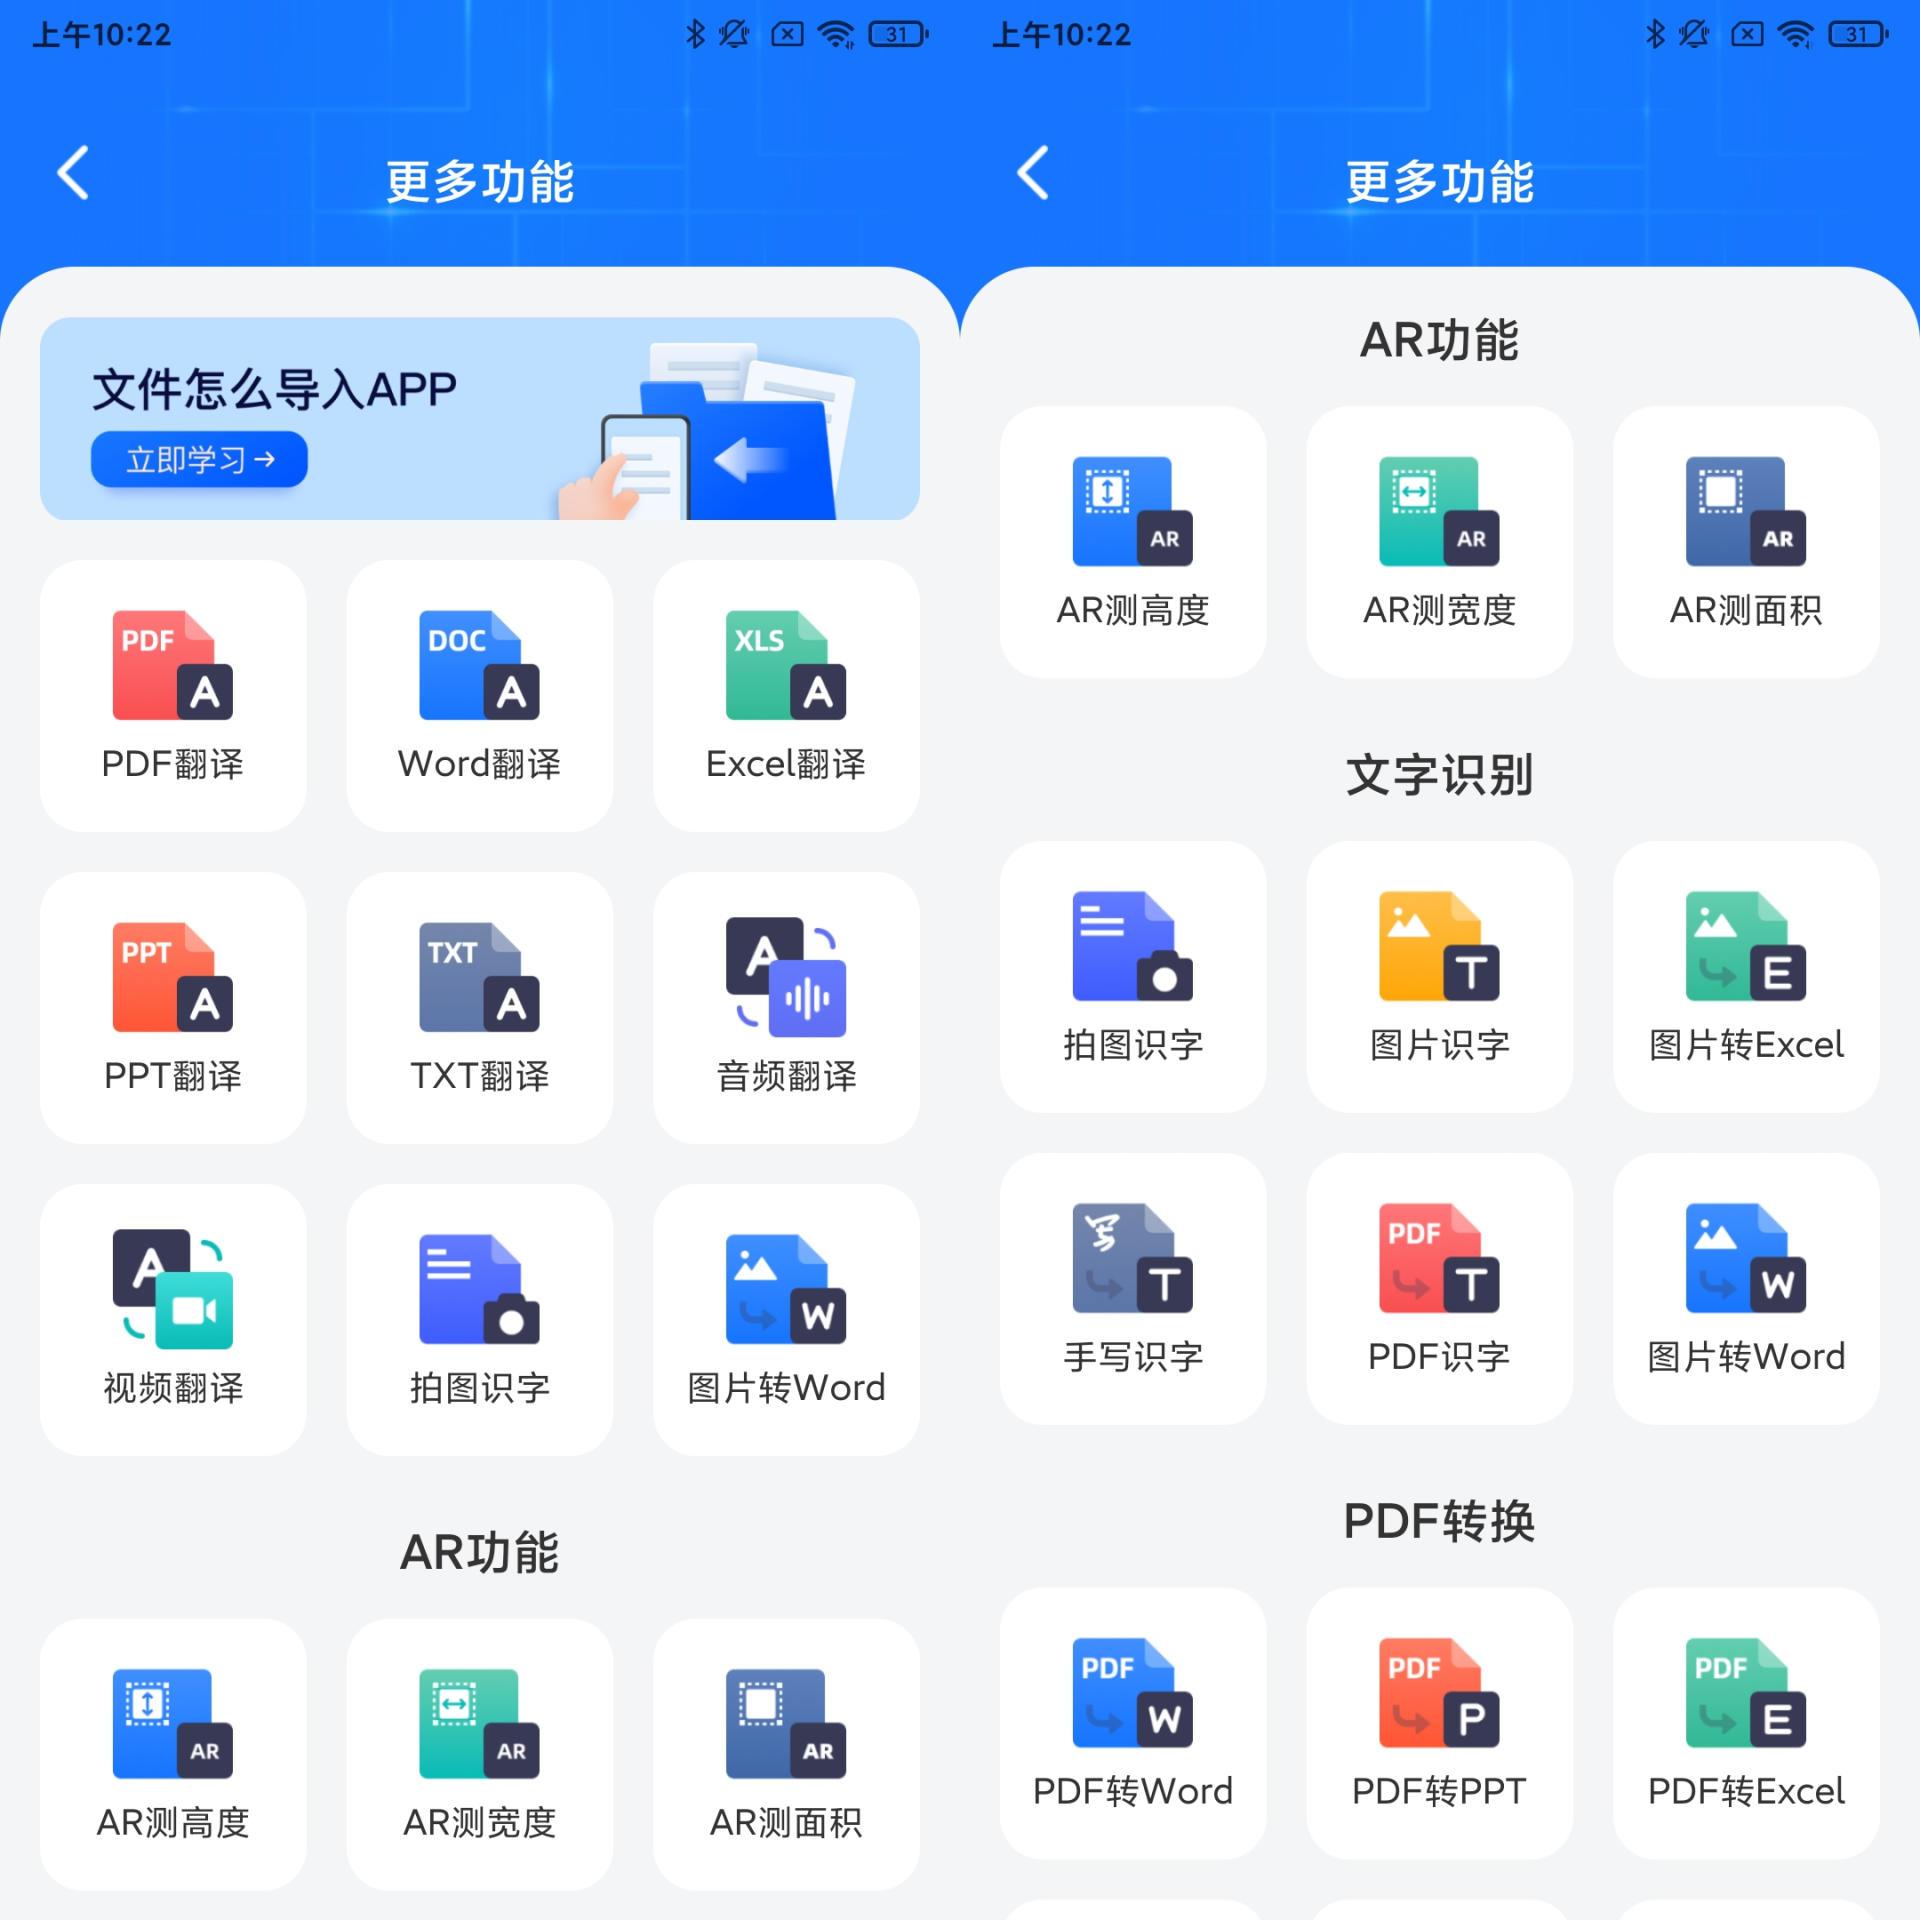 中英翻译君app下载,中英翻译君app手机版 v1.5.3 - 浏览器家园